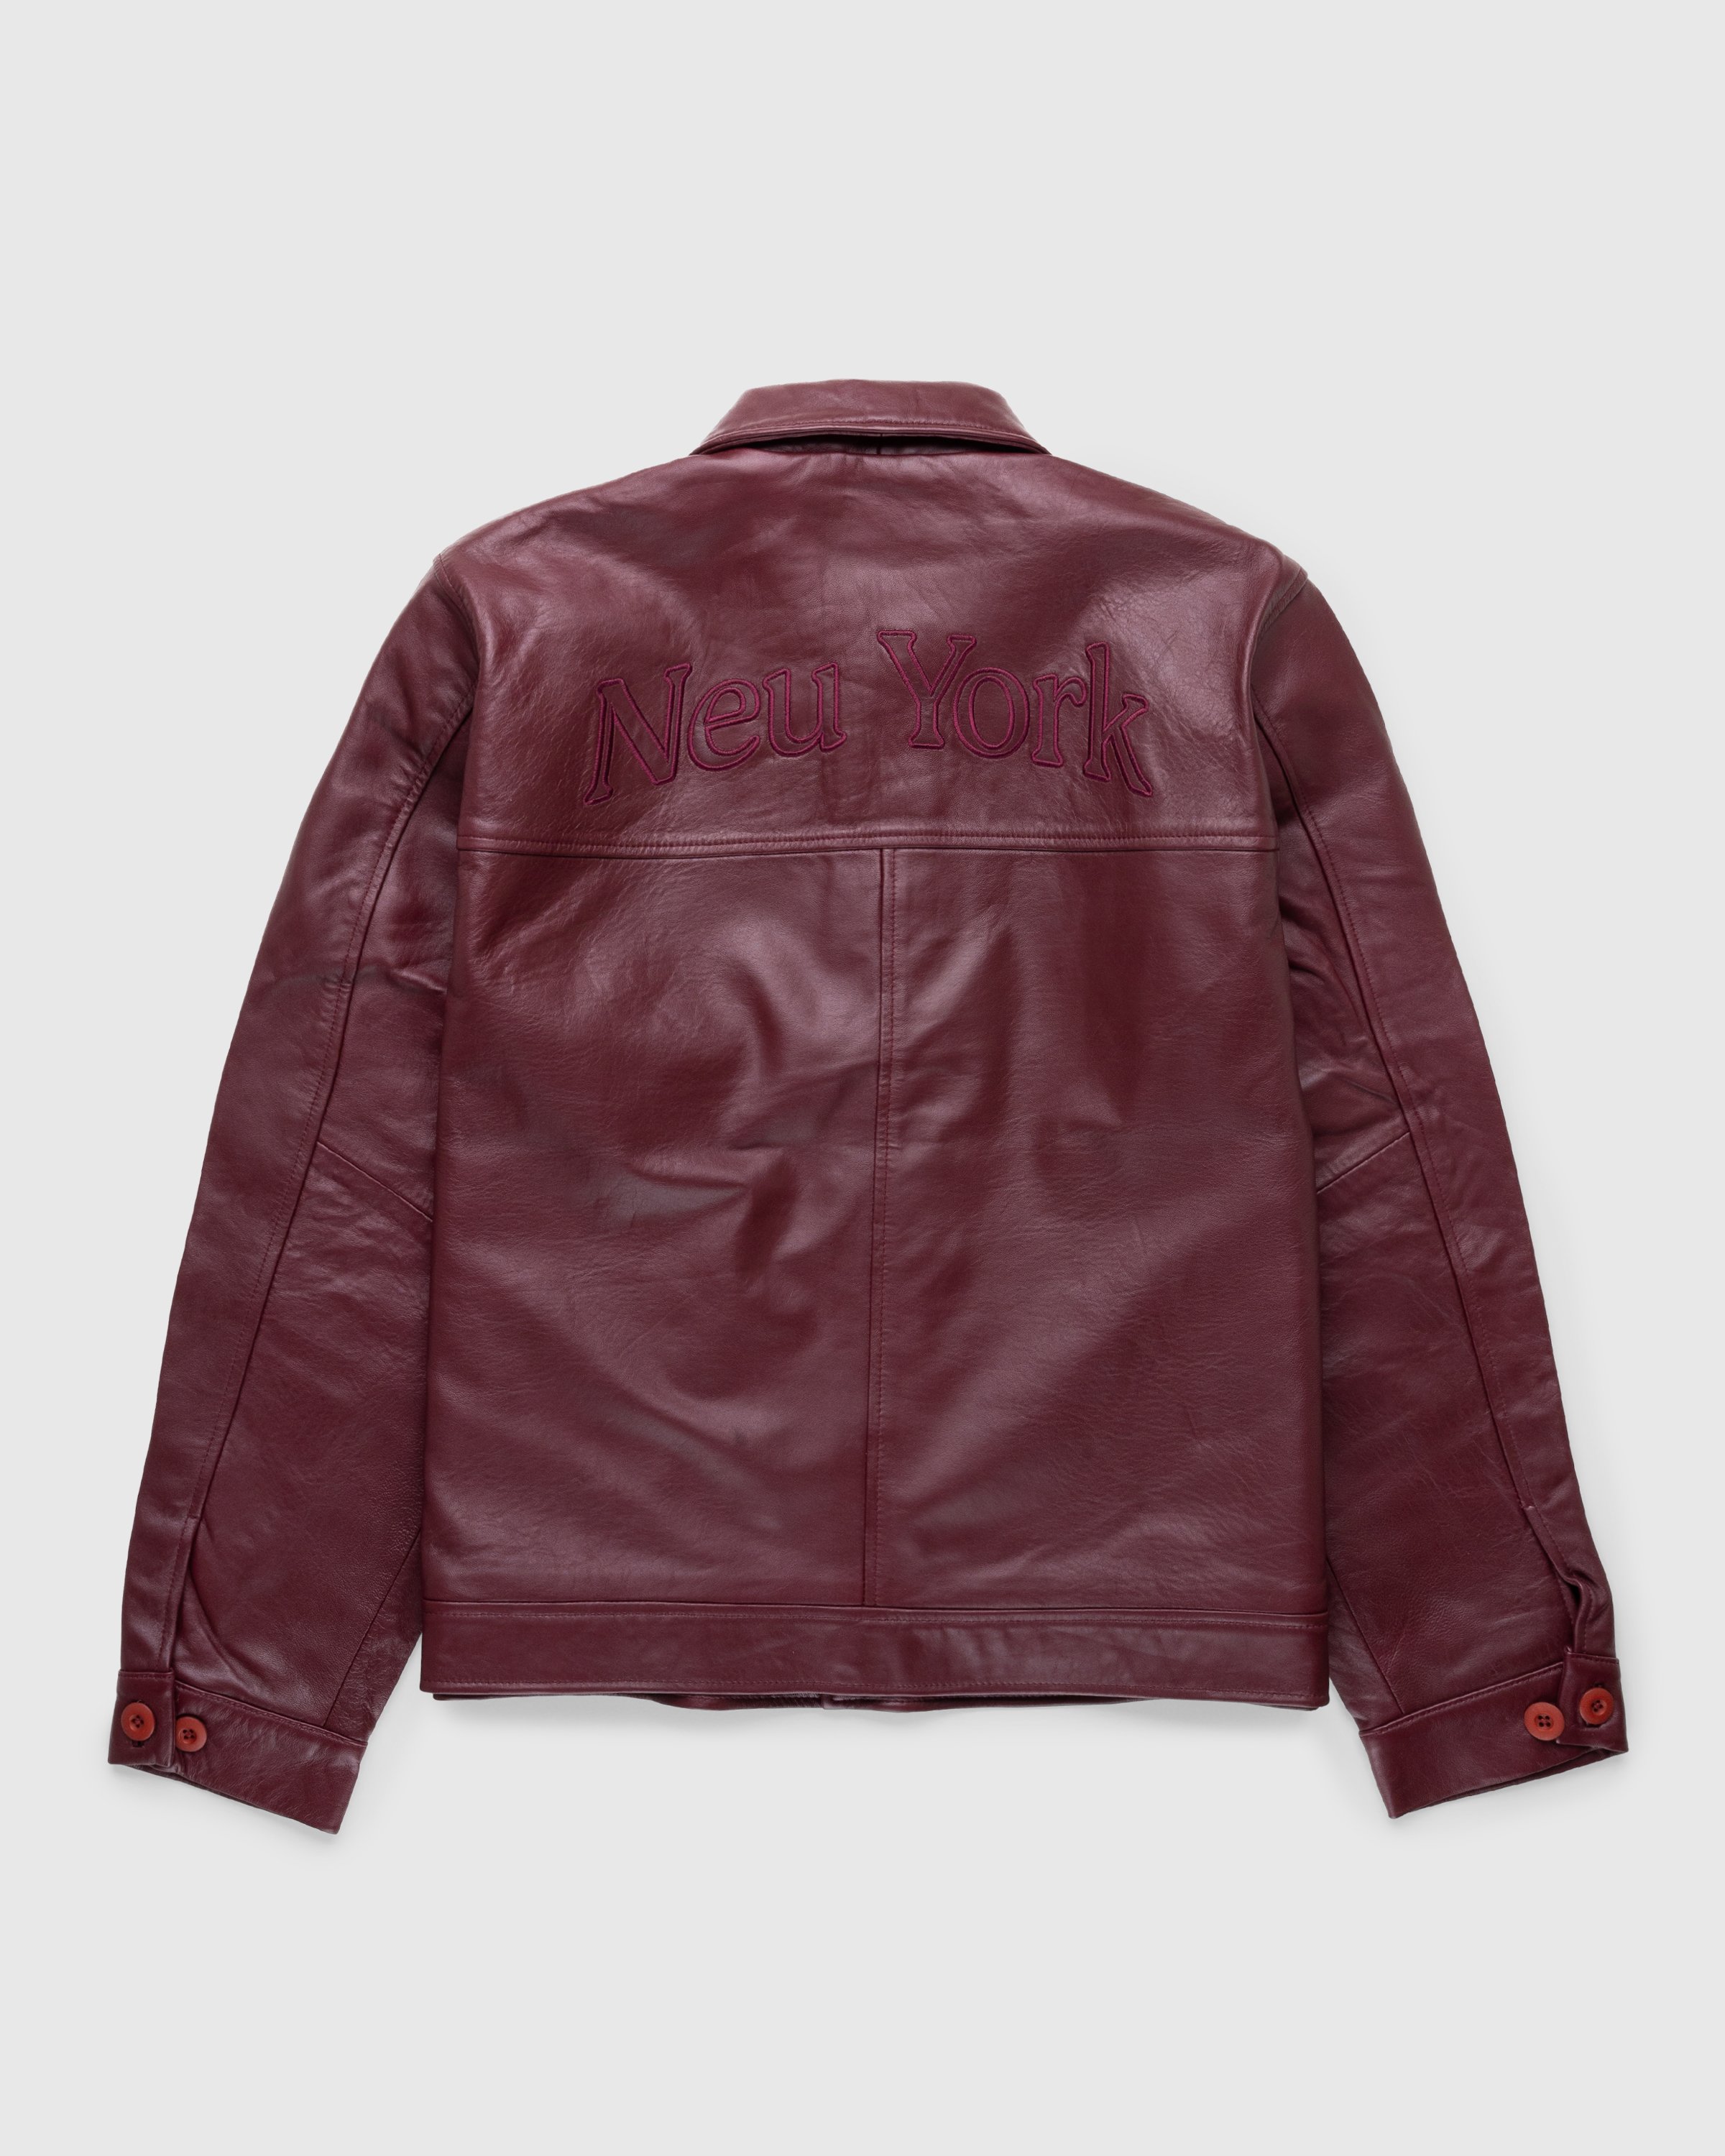 Highsnobiety - Neu York Leather Jacket Burgundy - Clothing - Red - Image 1